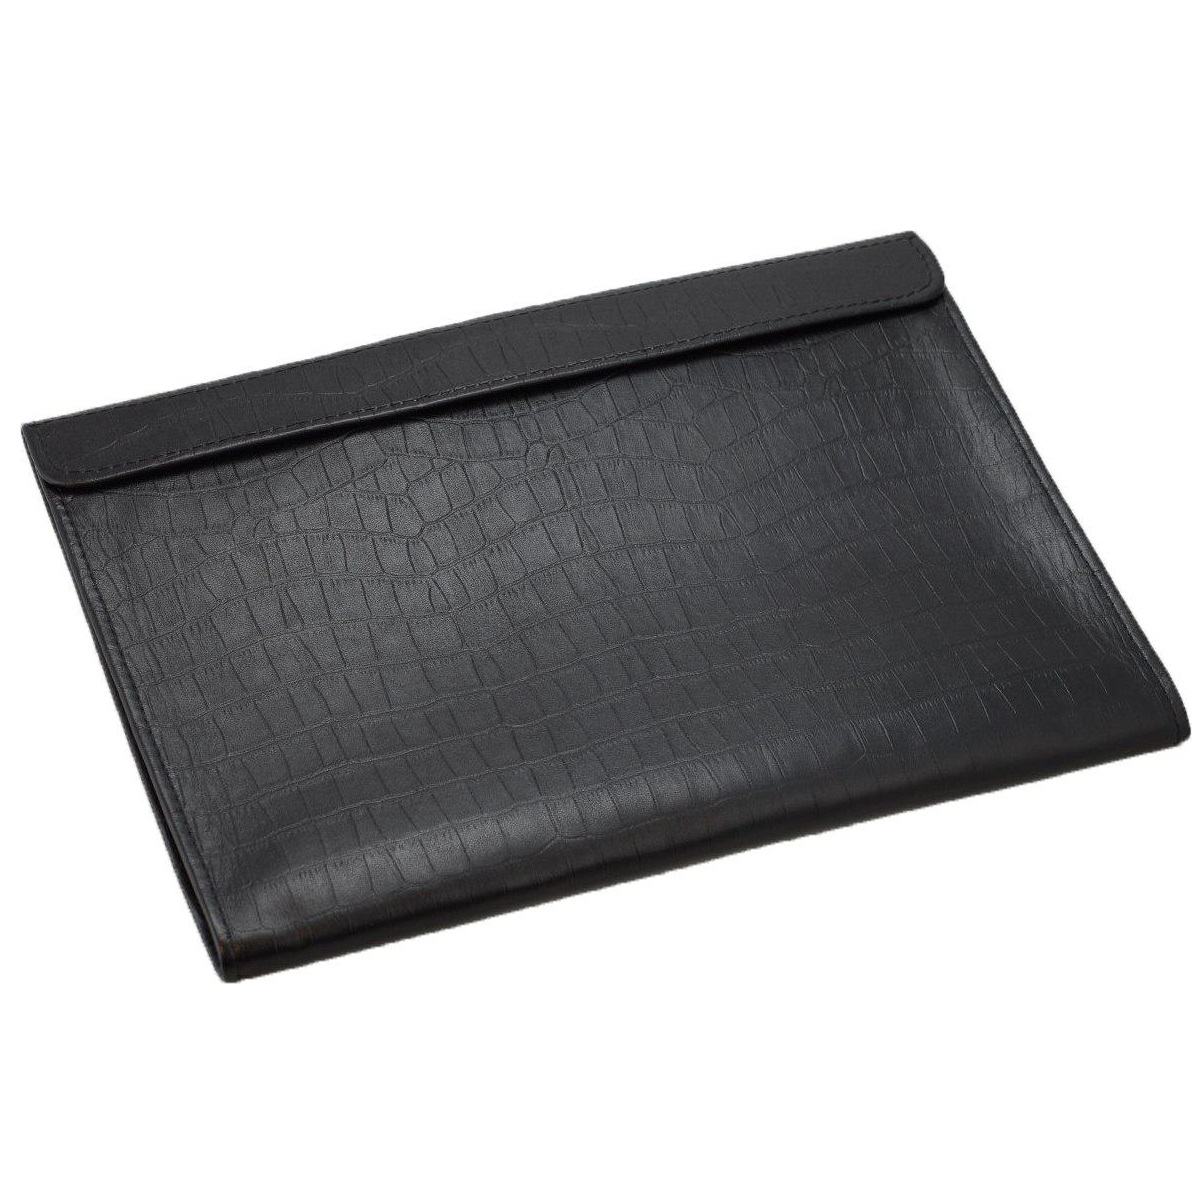 Кожаный чехол-конверт Alexander Croco Black для Macbook 12